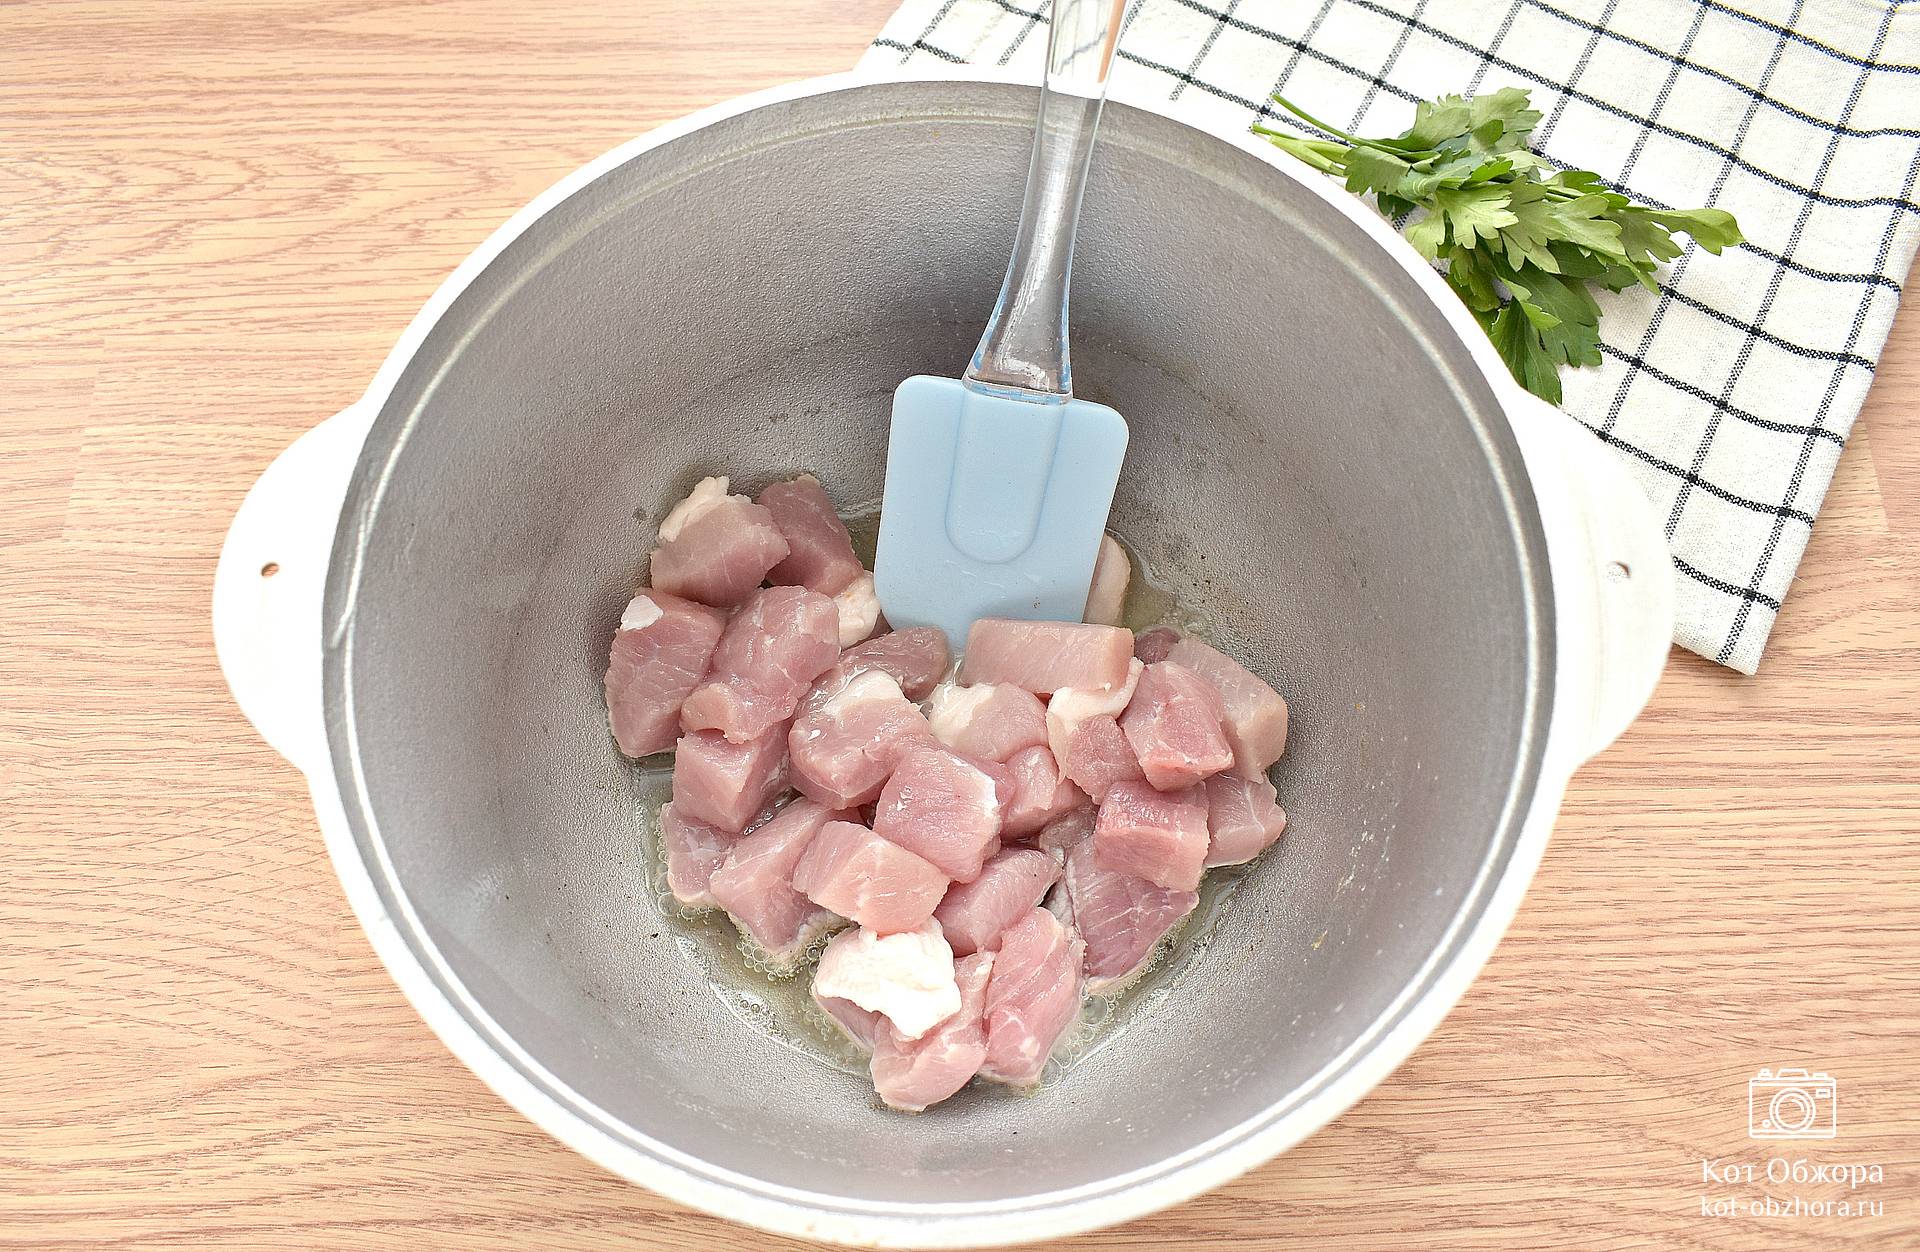 Тушёная картошка с мясом в казане — рецепт с фото пошагово. Как потушить картошку с мясом в казане?